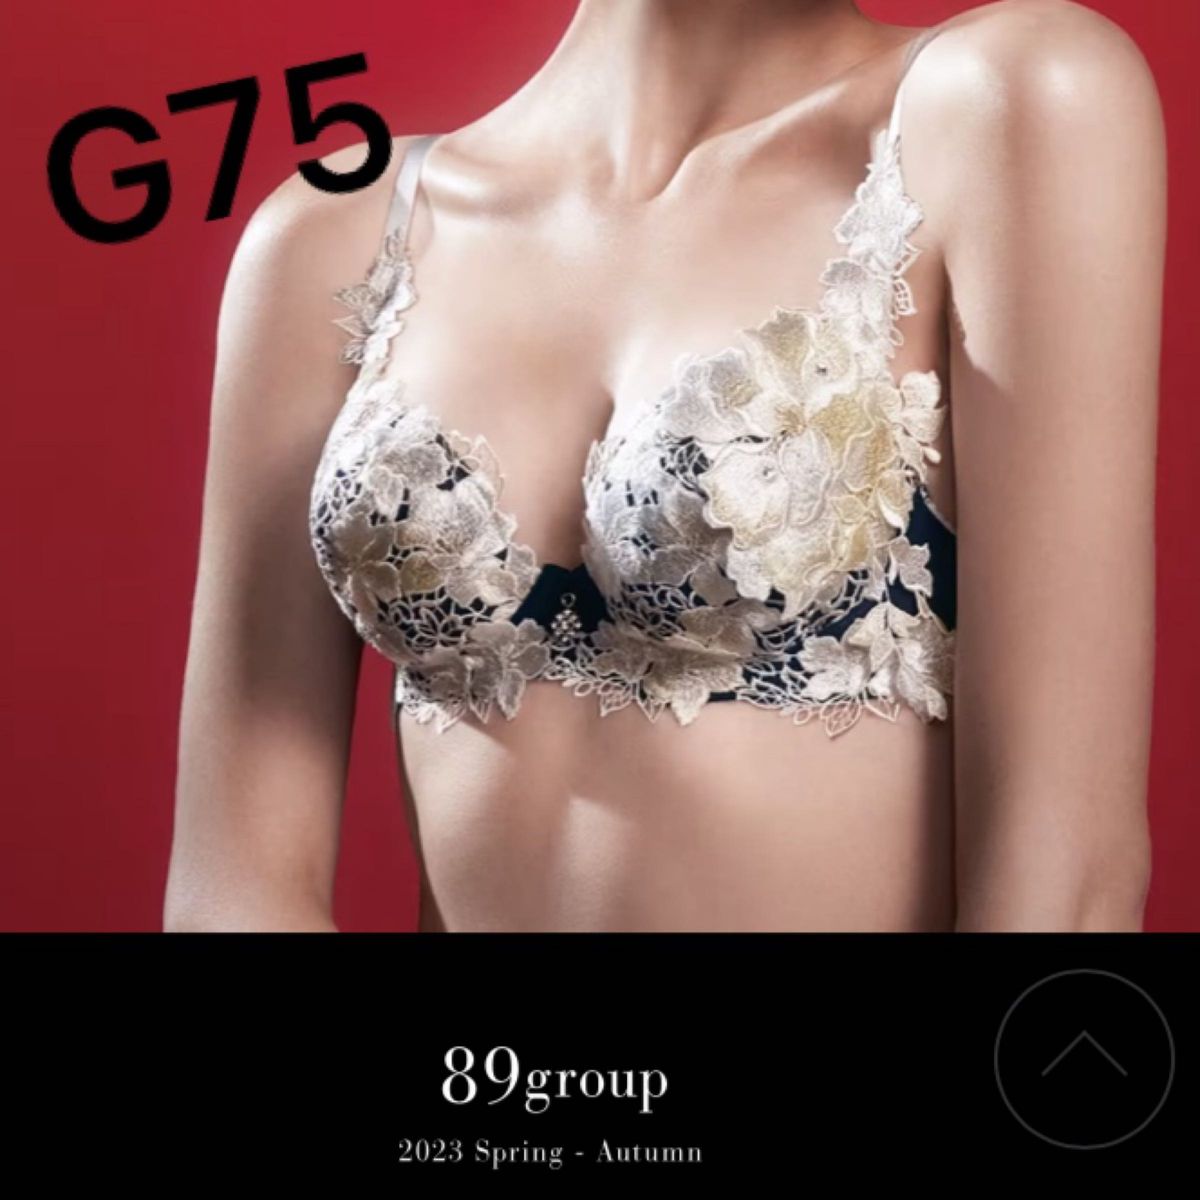 サルート 89g 平安絵巻 店舗限定 新品 G75 上下セット